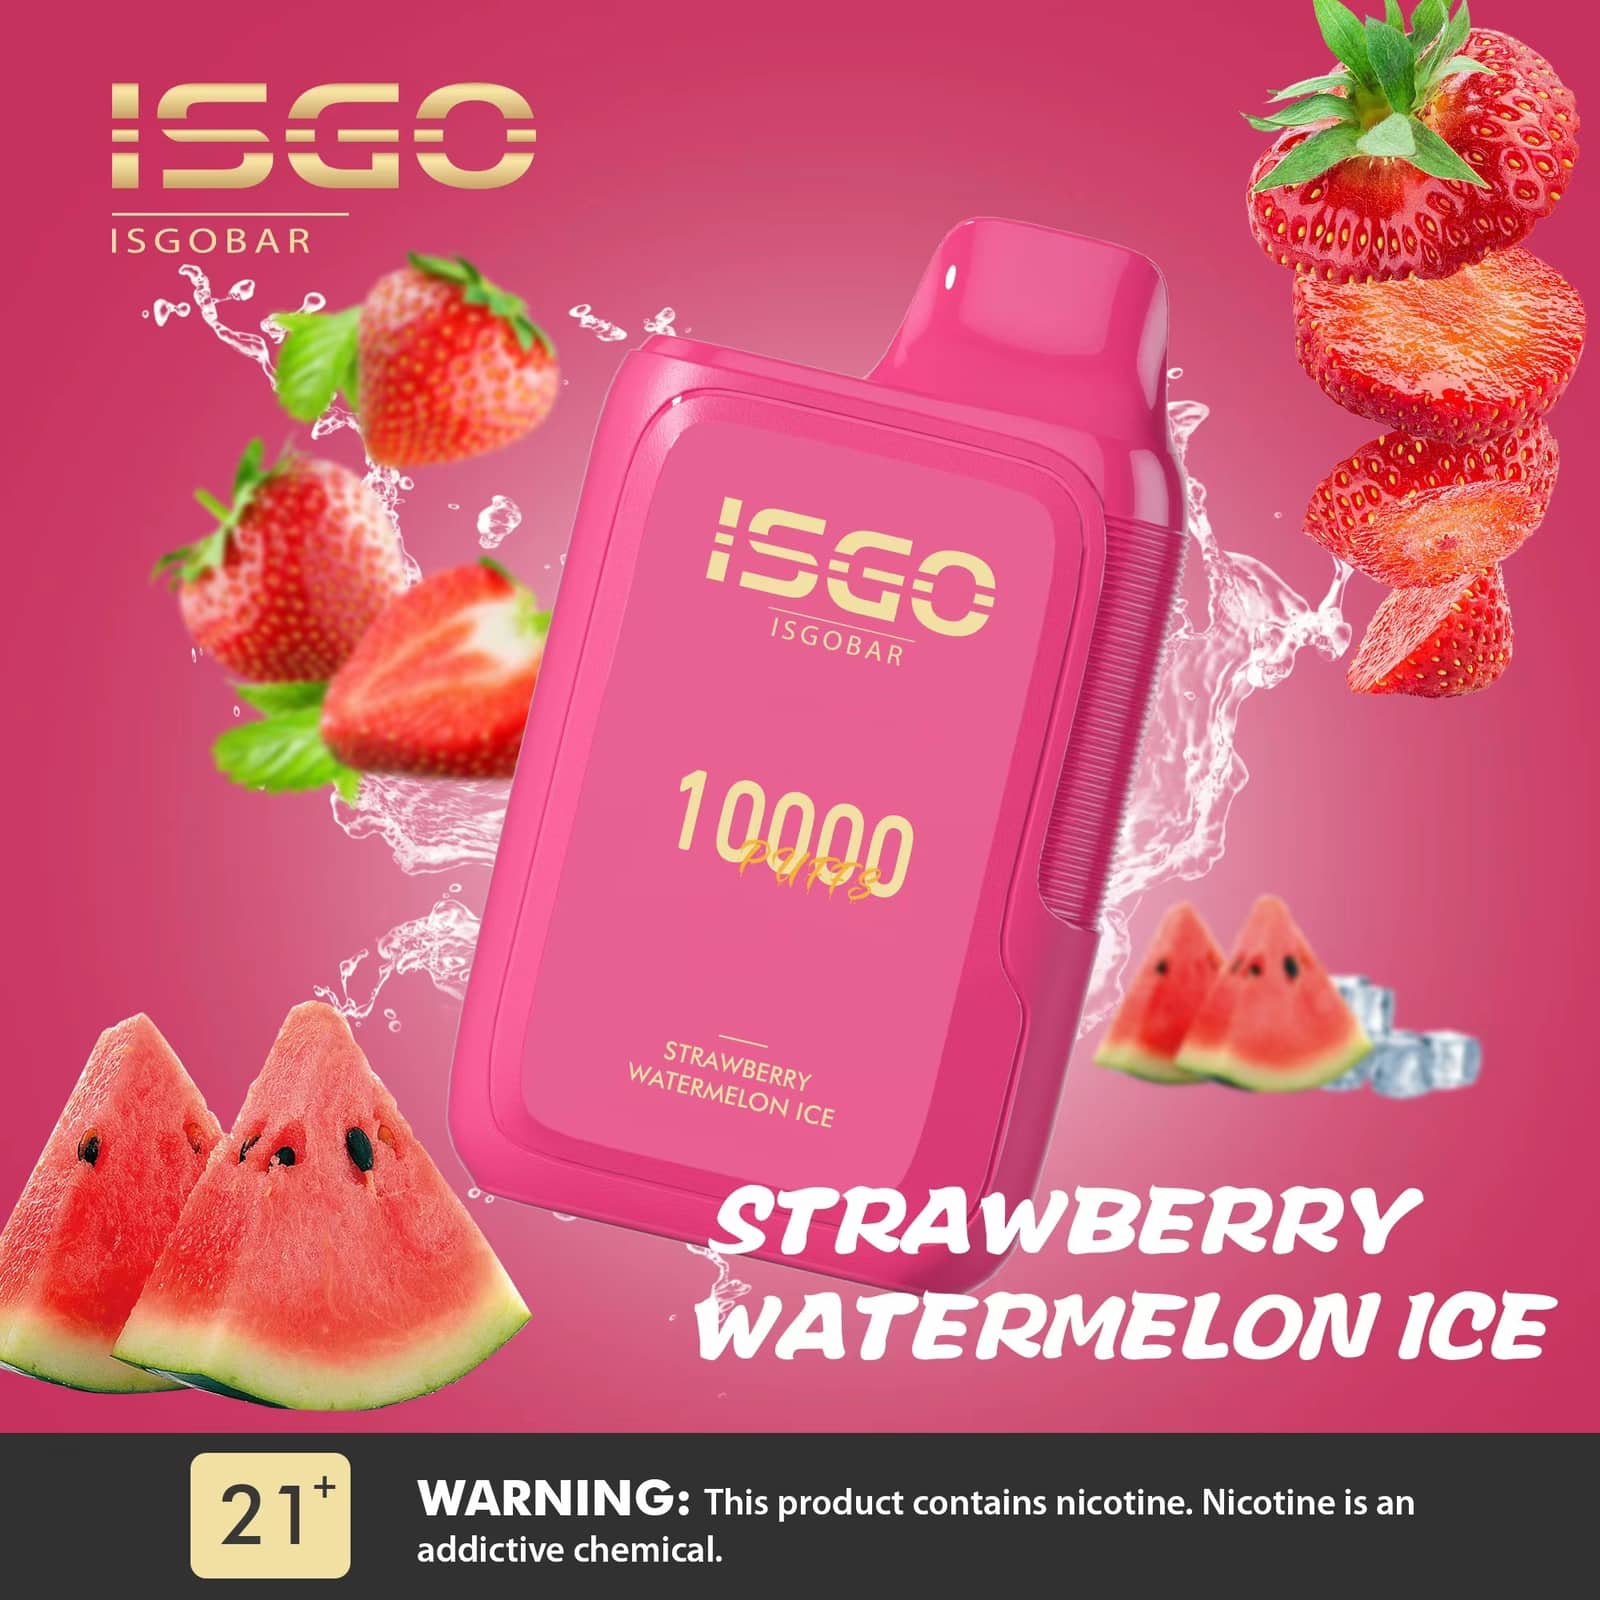 ISGO BAR 10000 - STRAWBERRY WATERMELON ICE